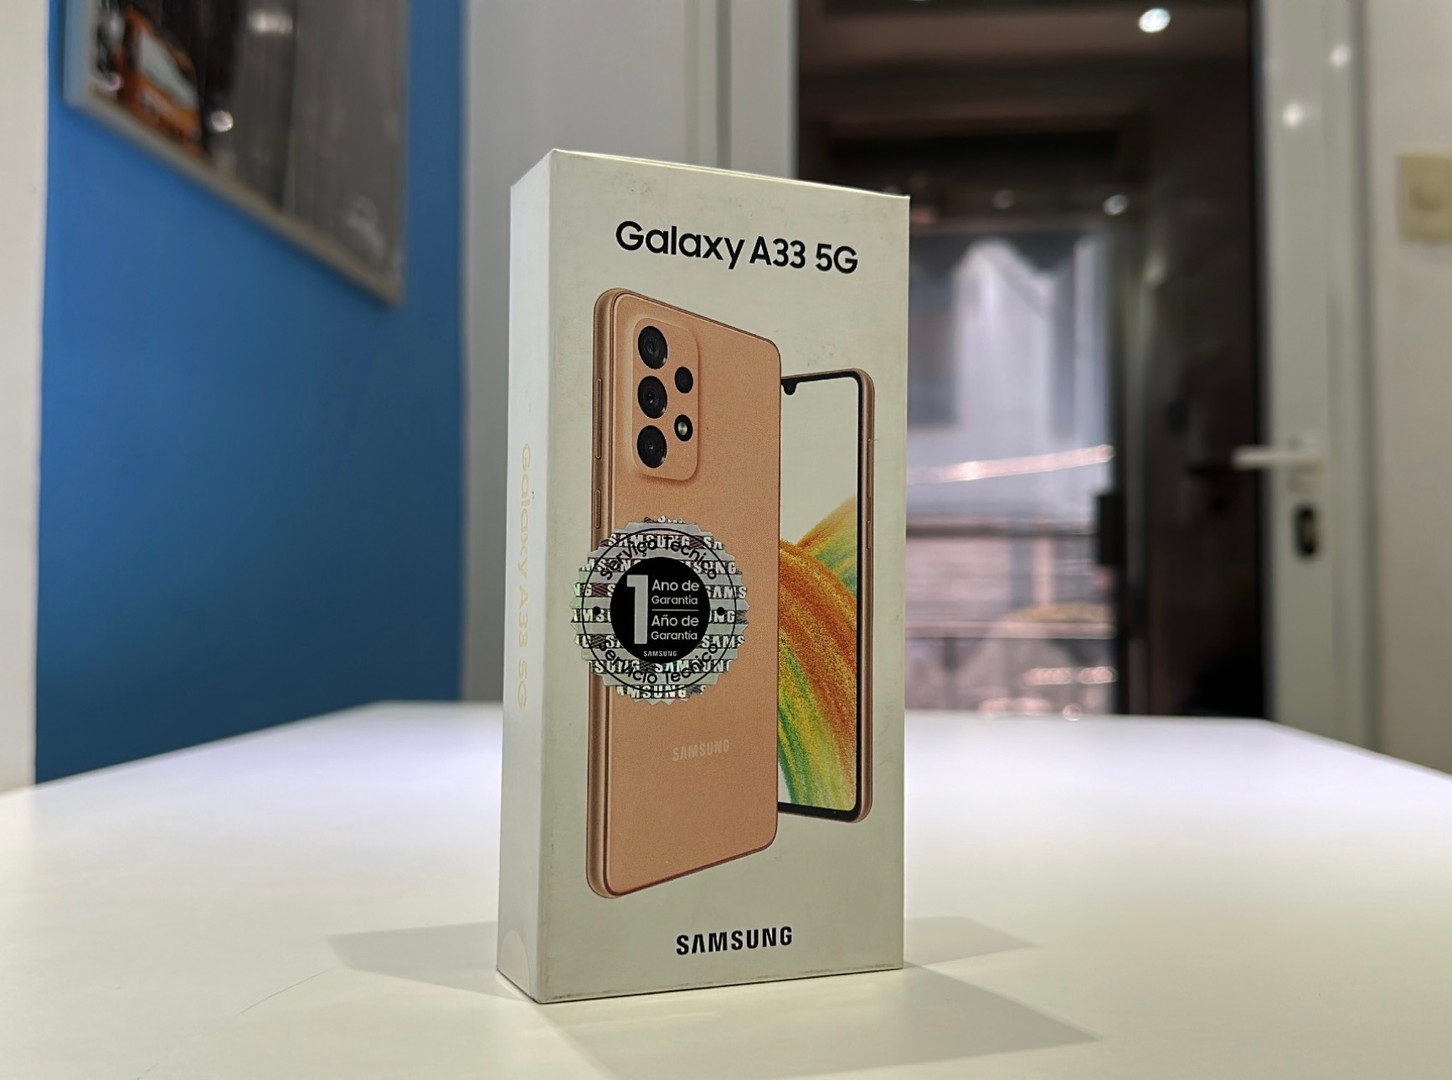 celulares y tabletas - Vendo Samsung Galaxy A33 5G 128GB Nuevos, Desbloqueados, Garantía, $ 15,500 NEG 0